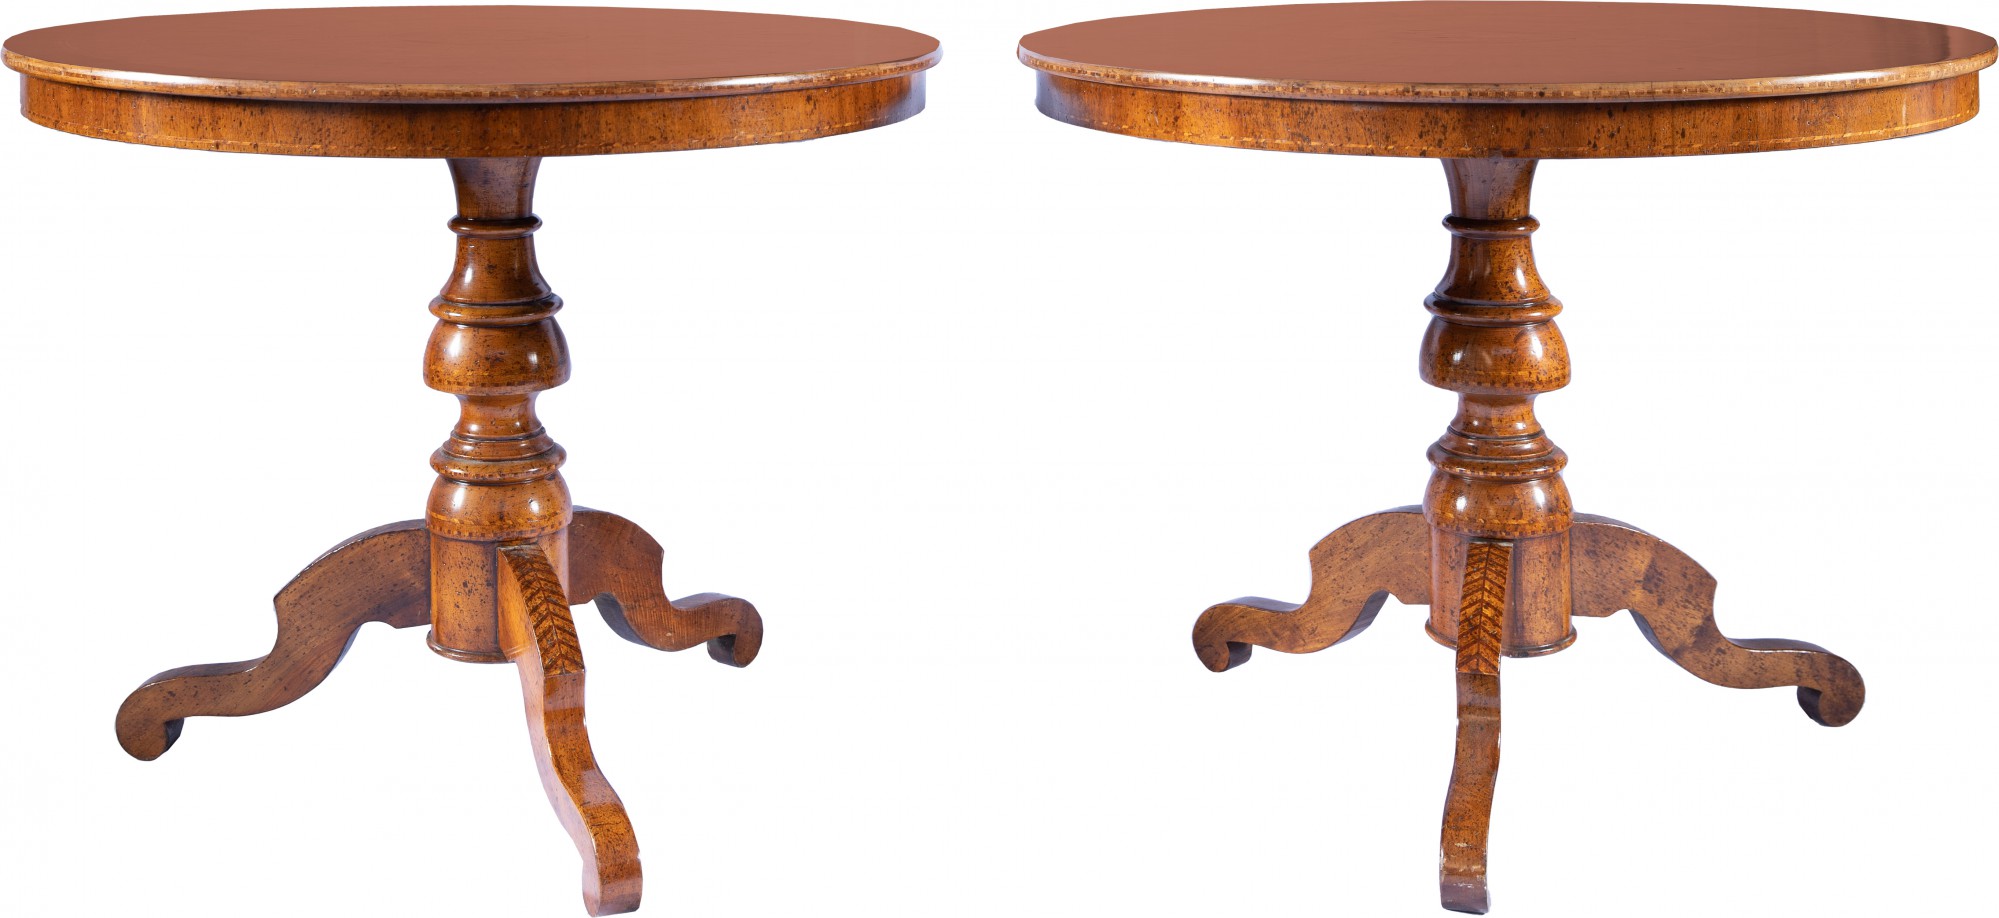 Excepcional par de mesas italianas - 